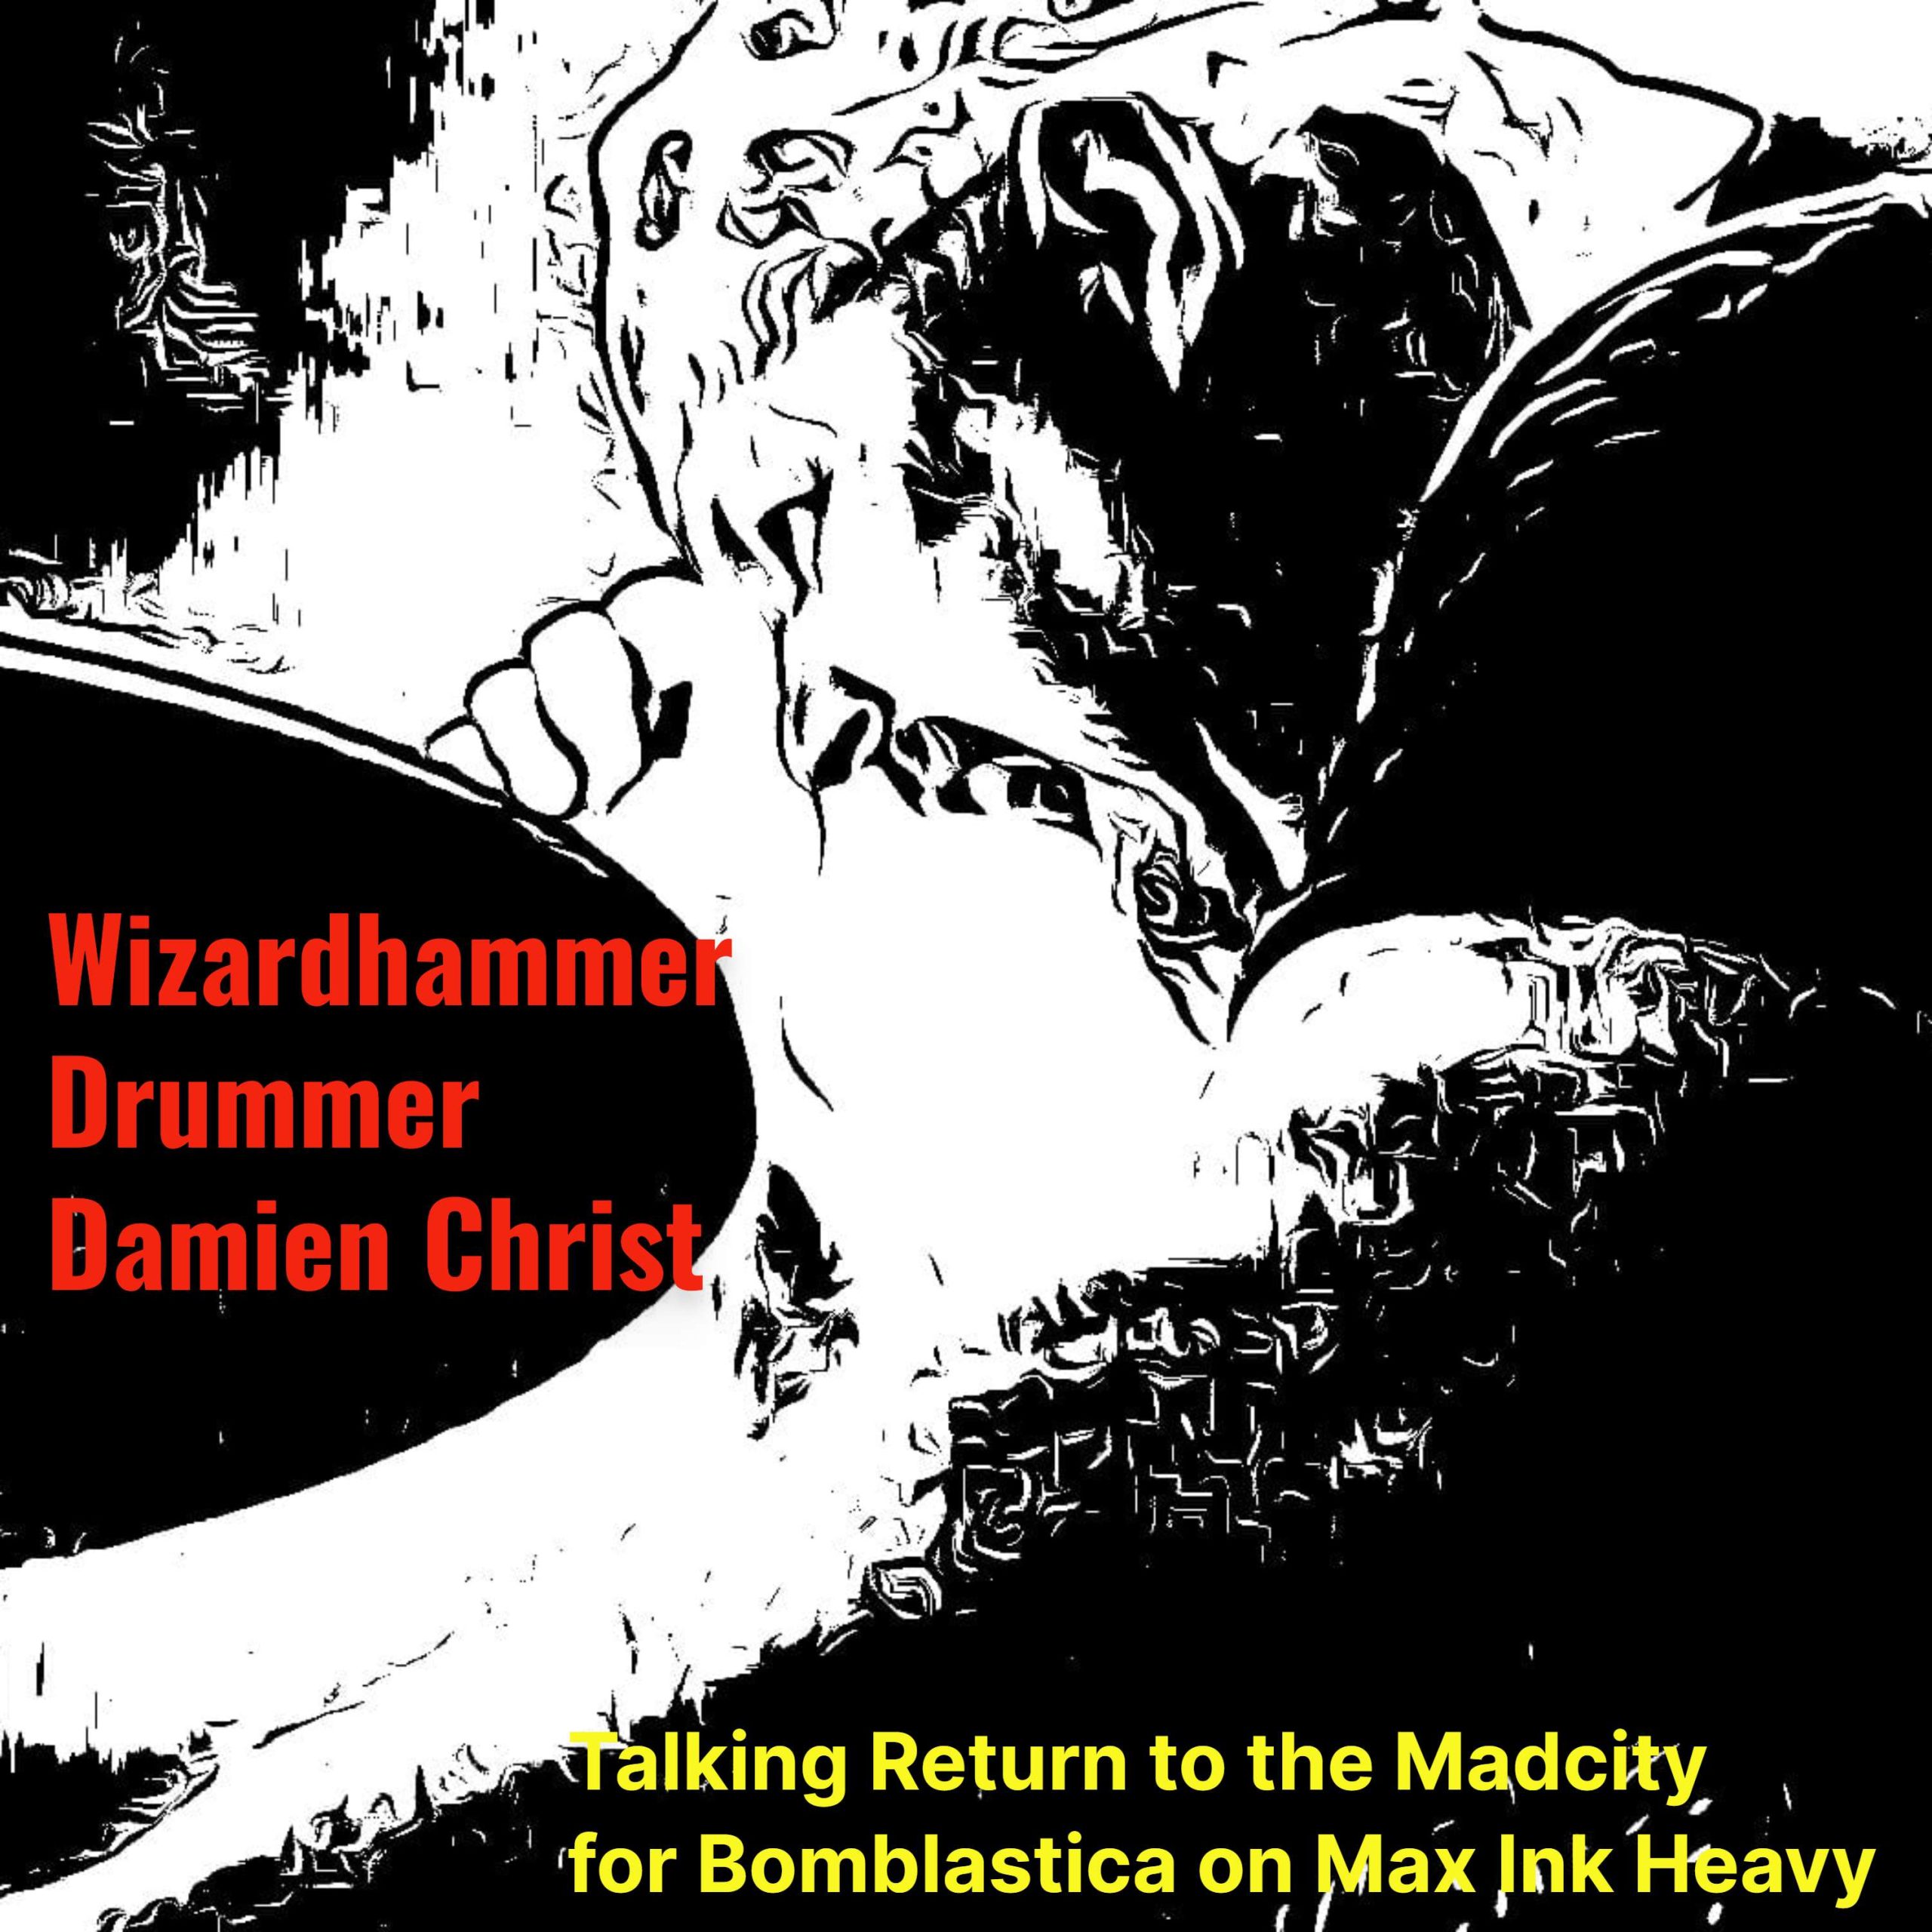 Wizardhammer drummer Damien Christ